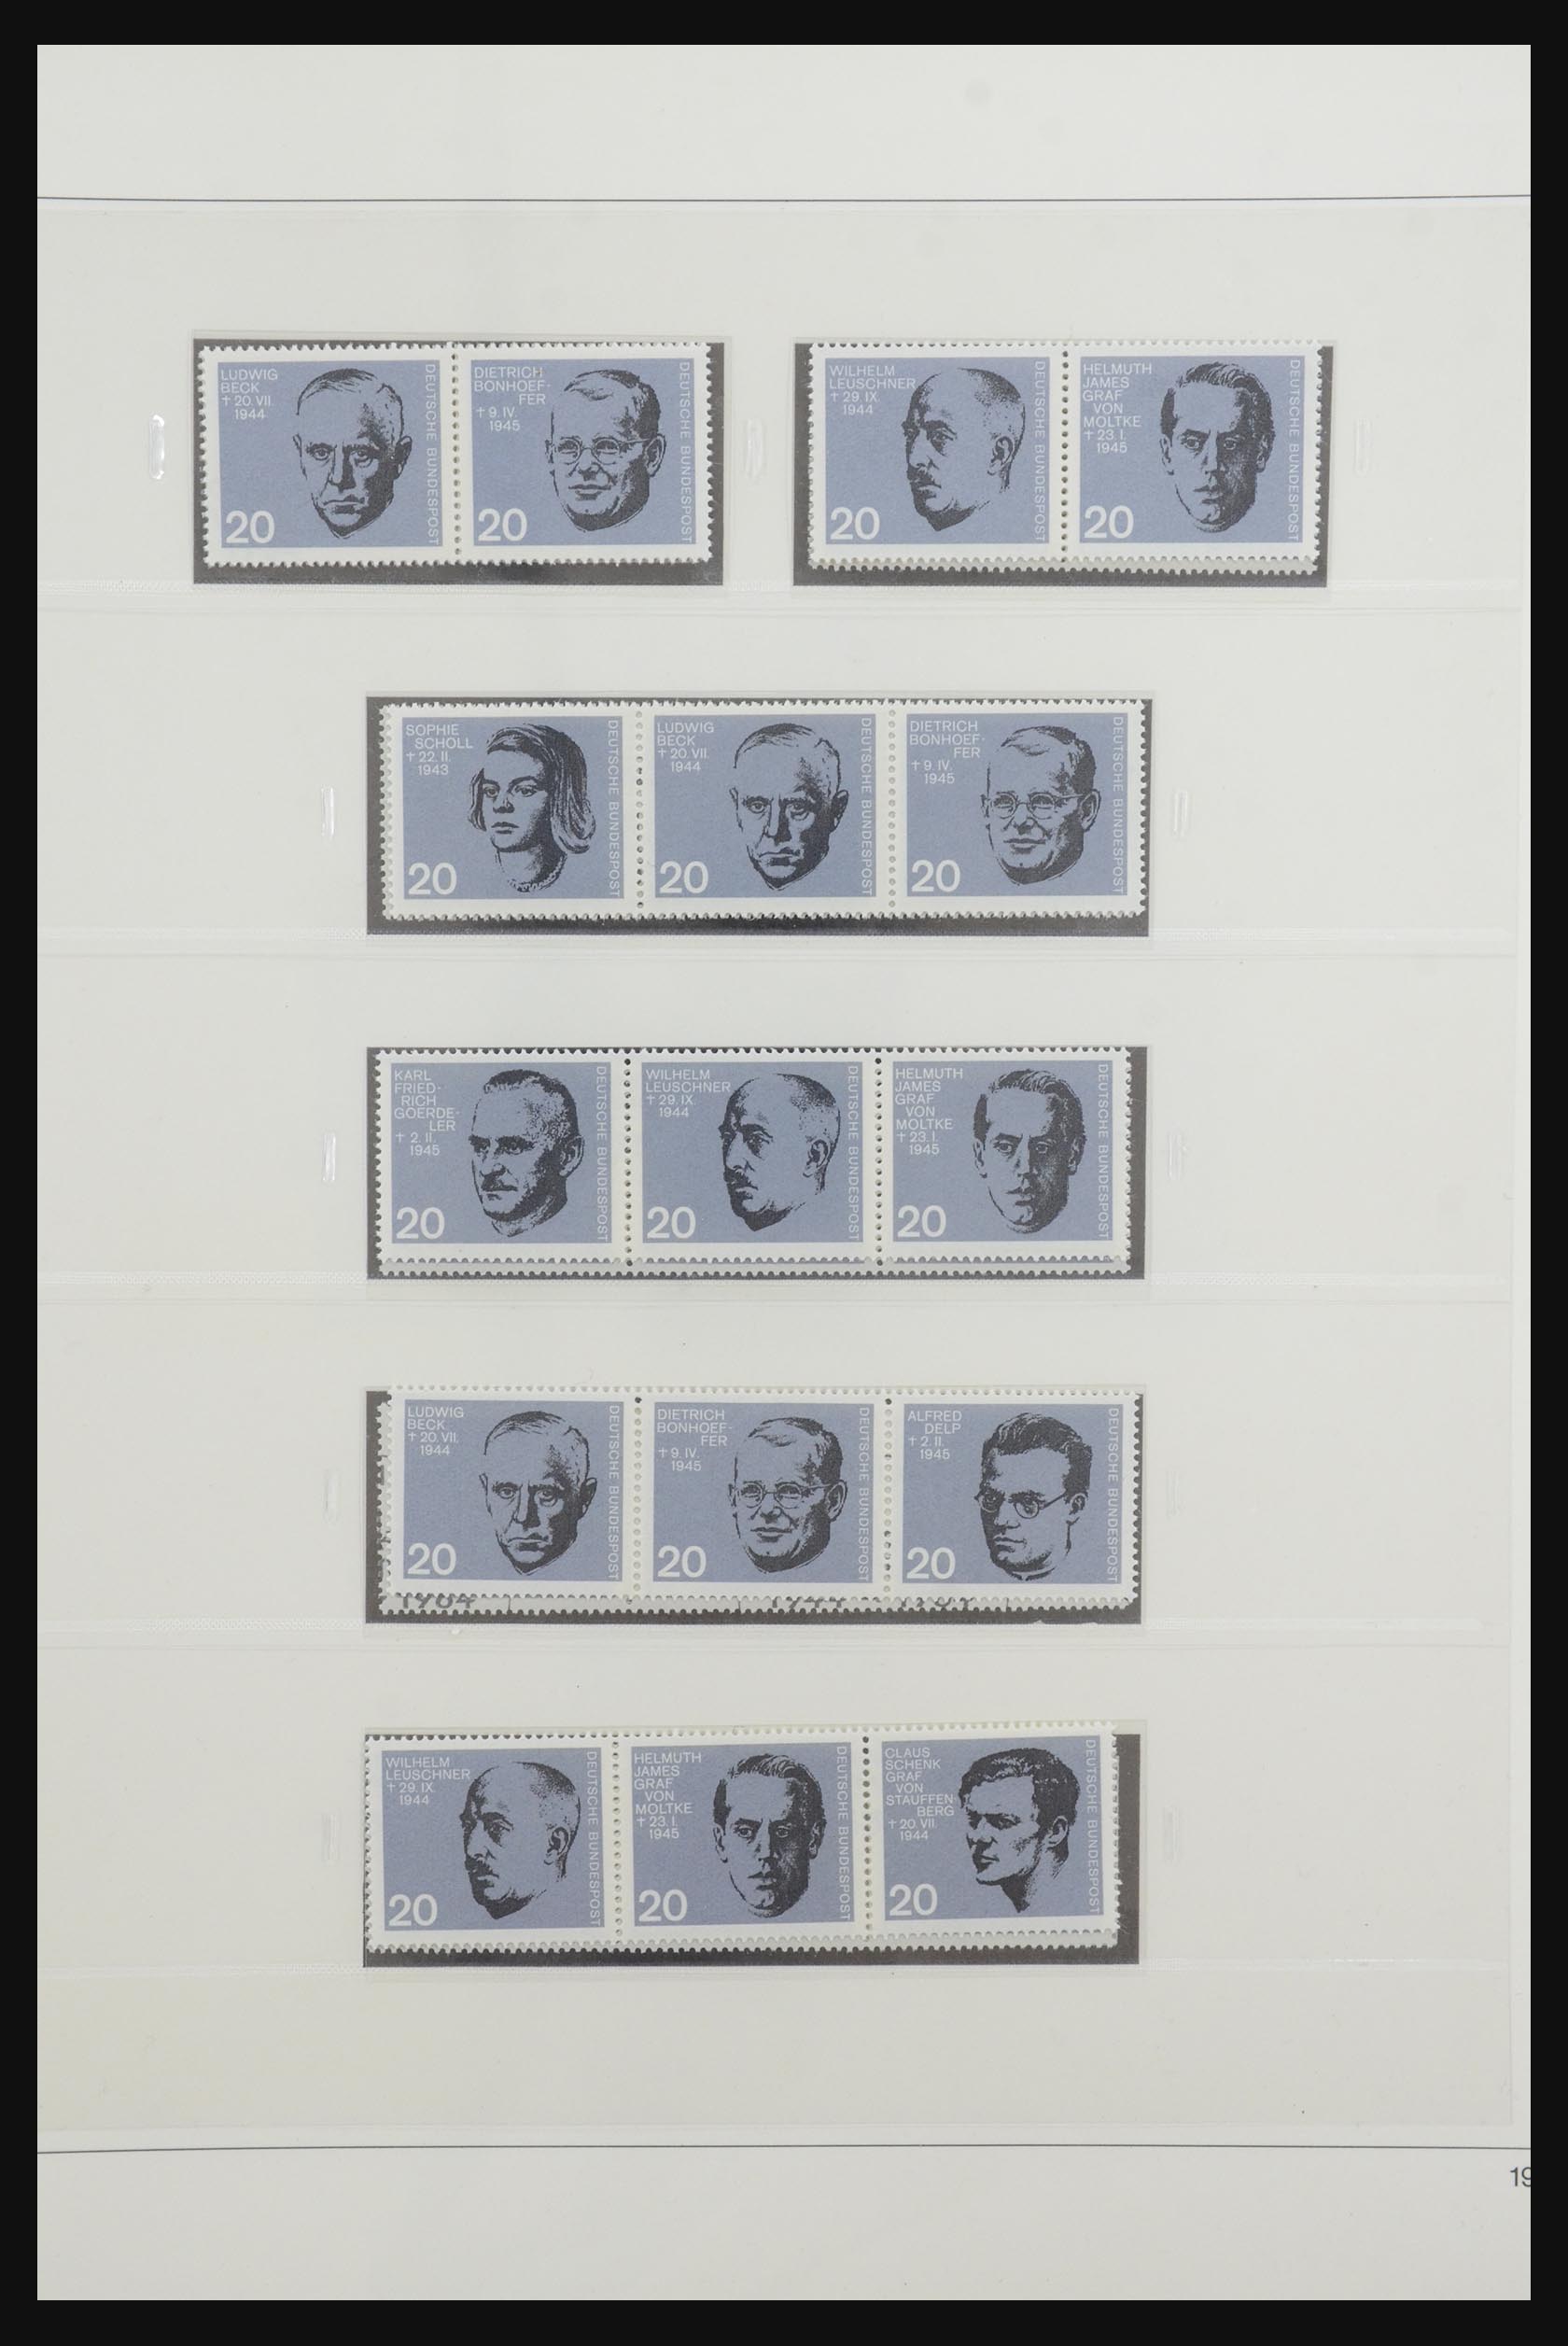 31842 025 - 31842 Bundespost combinaties 1951-2003.